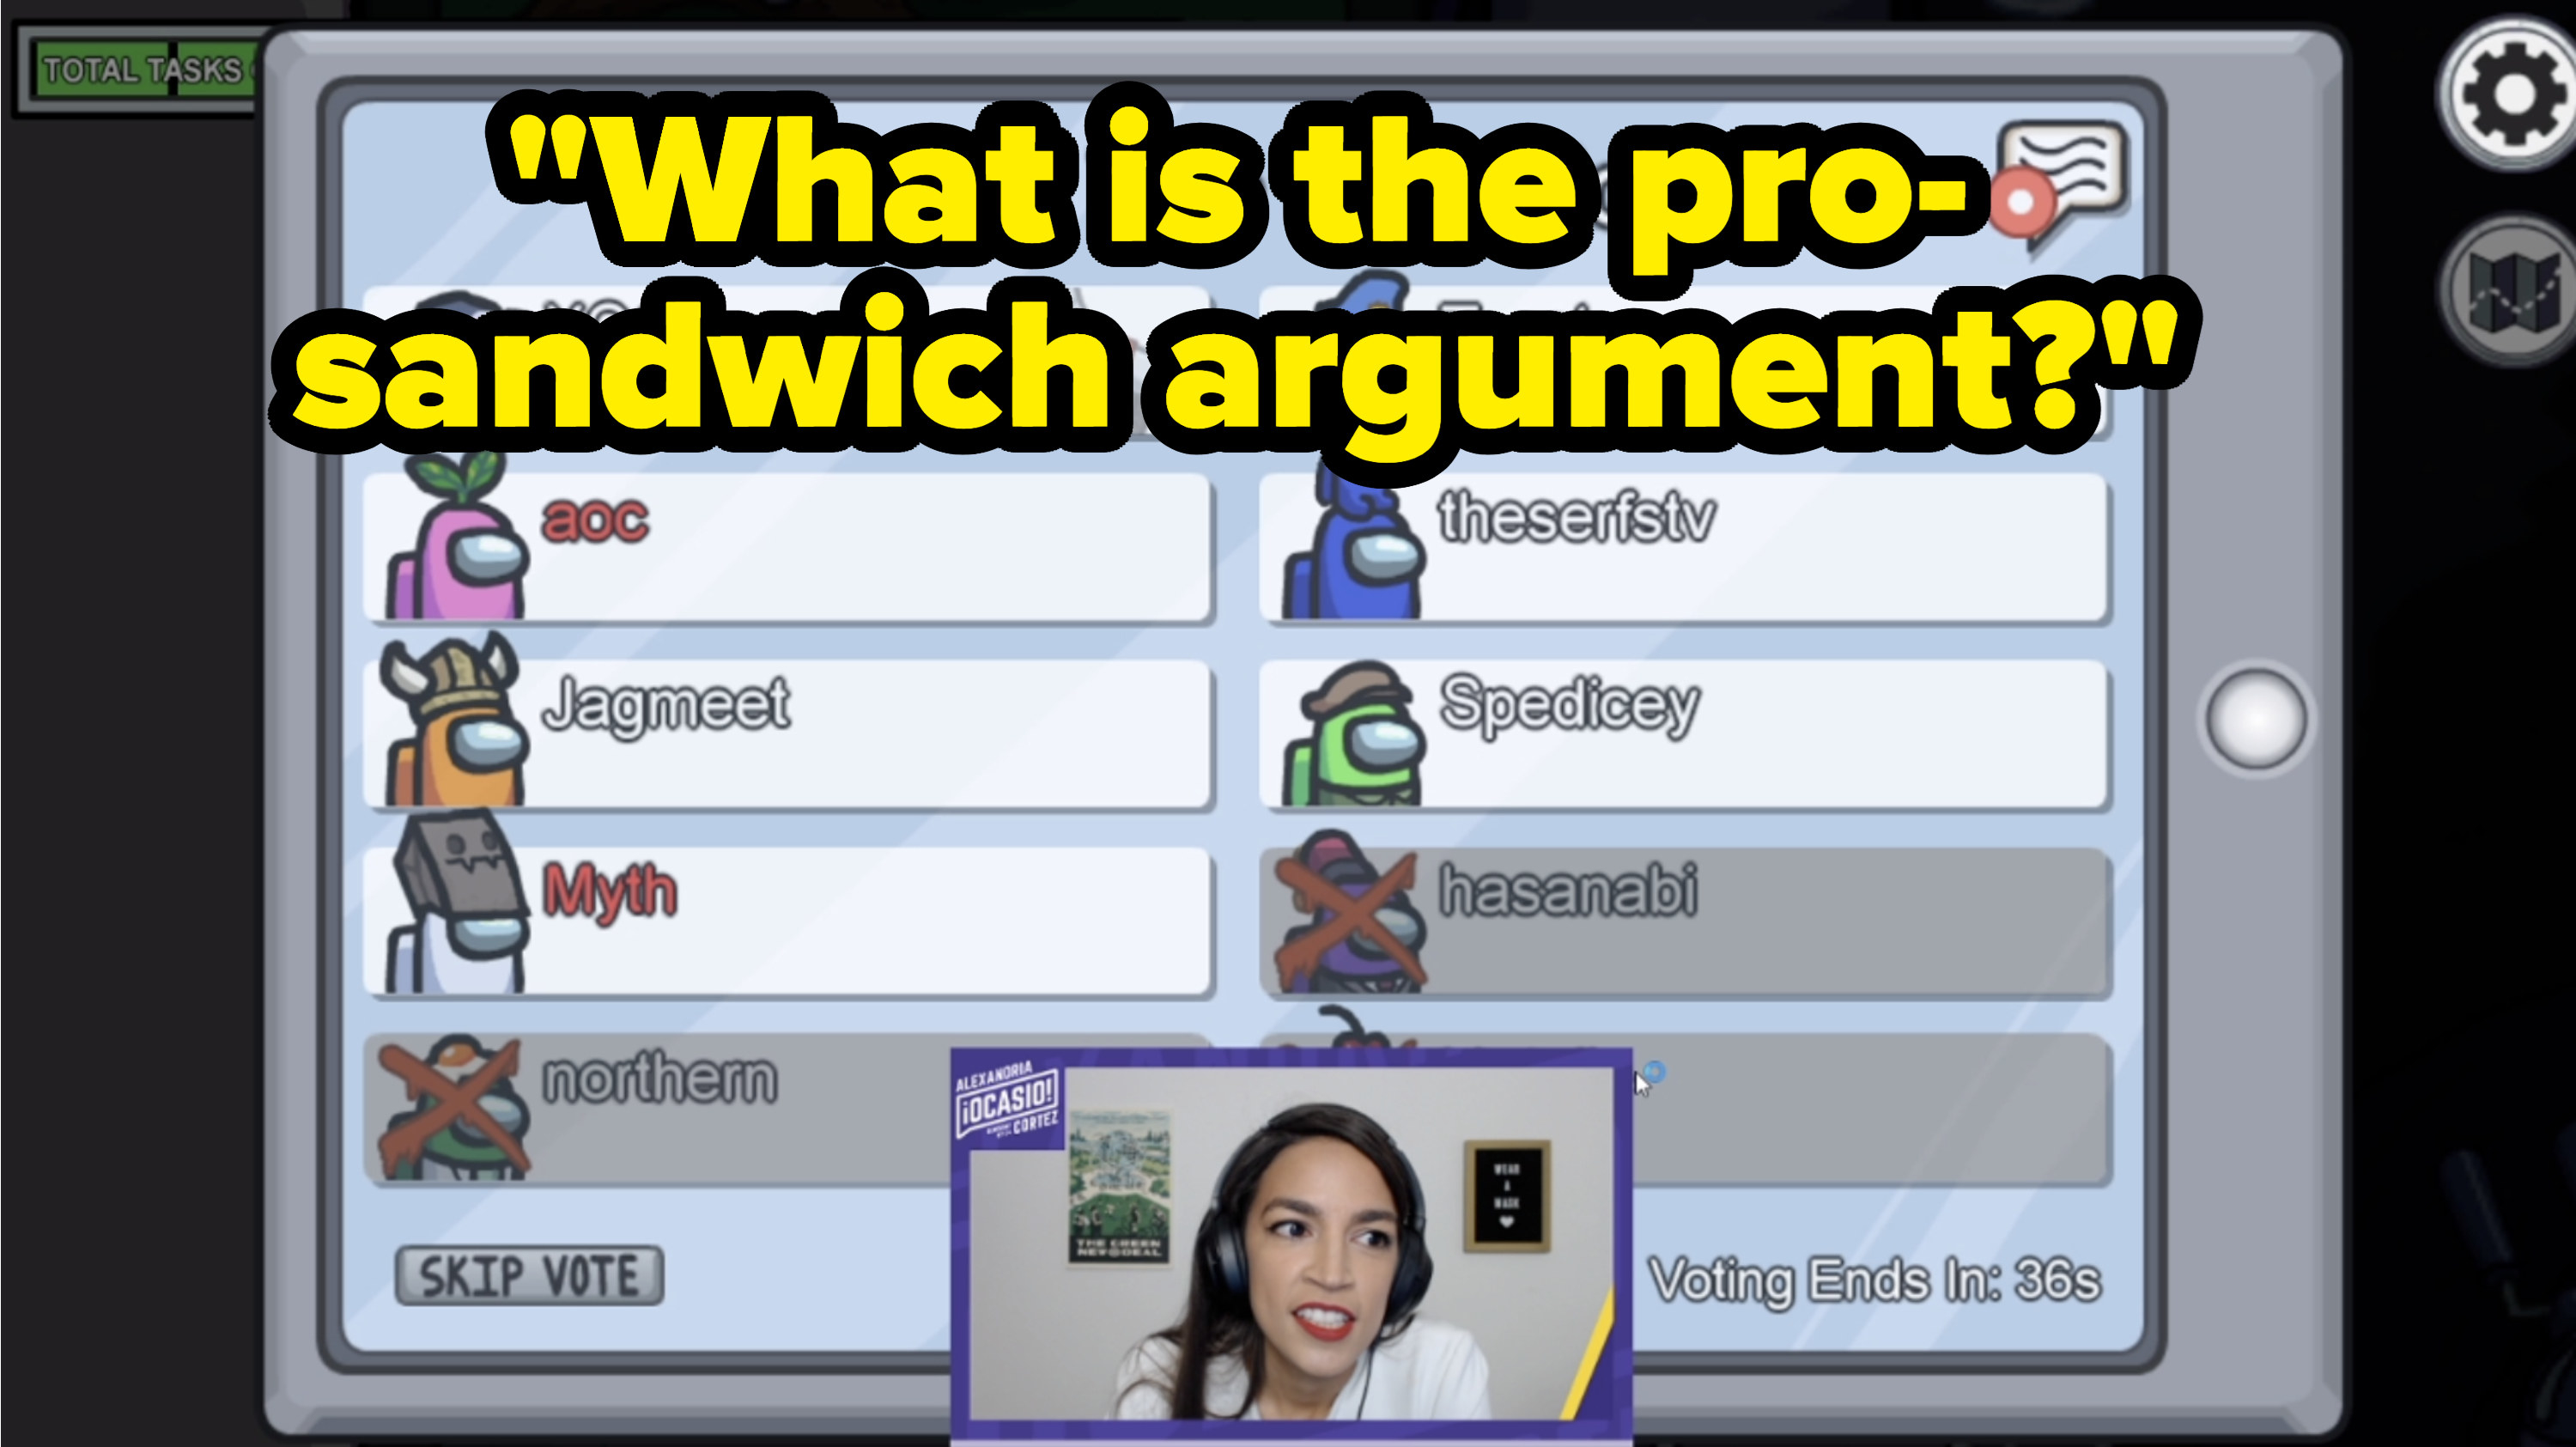 AOC asks what the pro-sandwich argument is